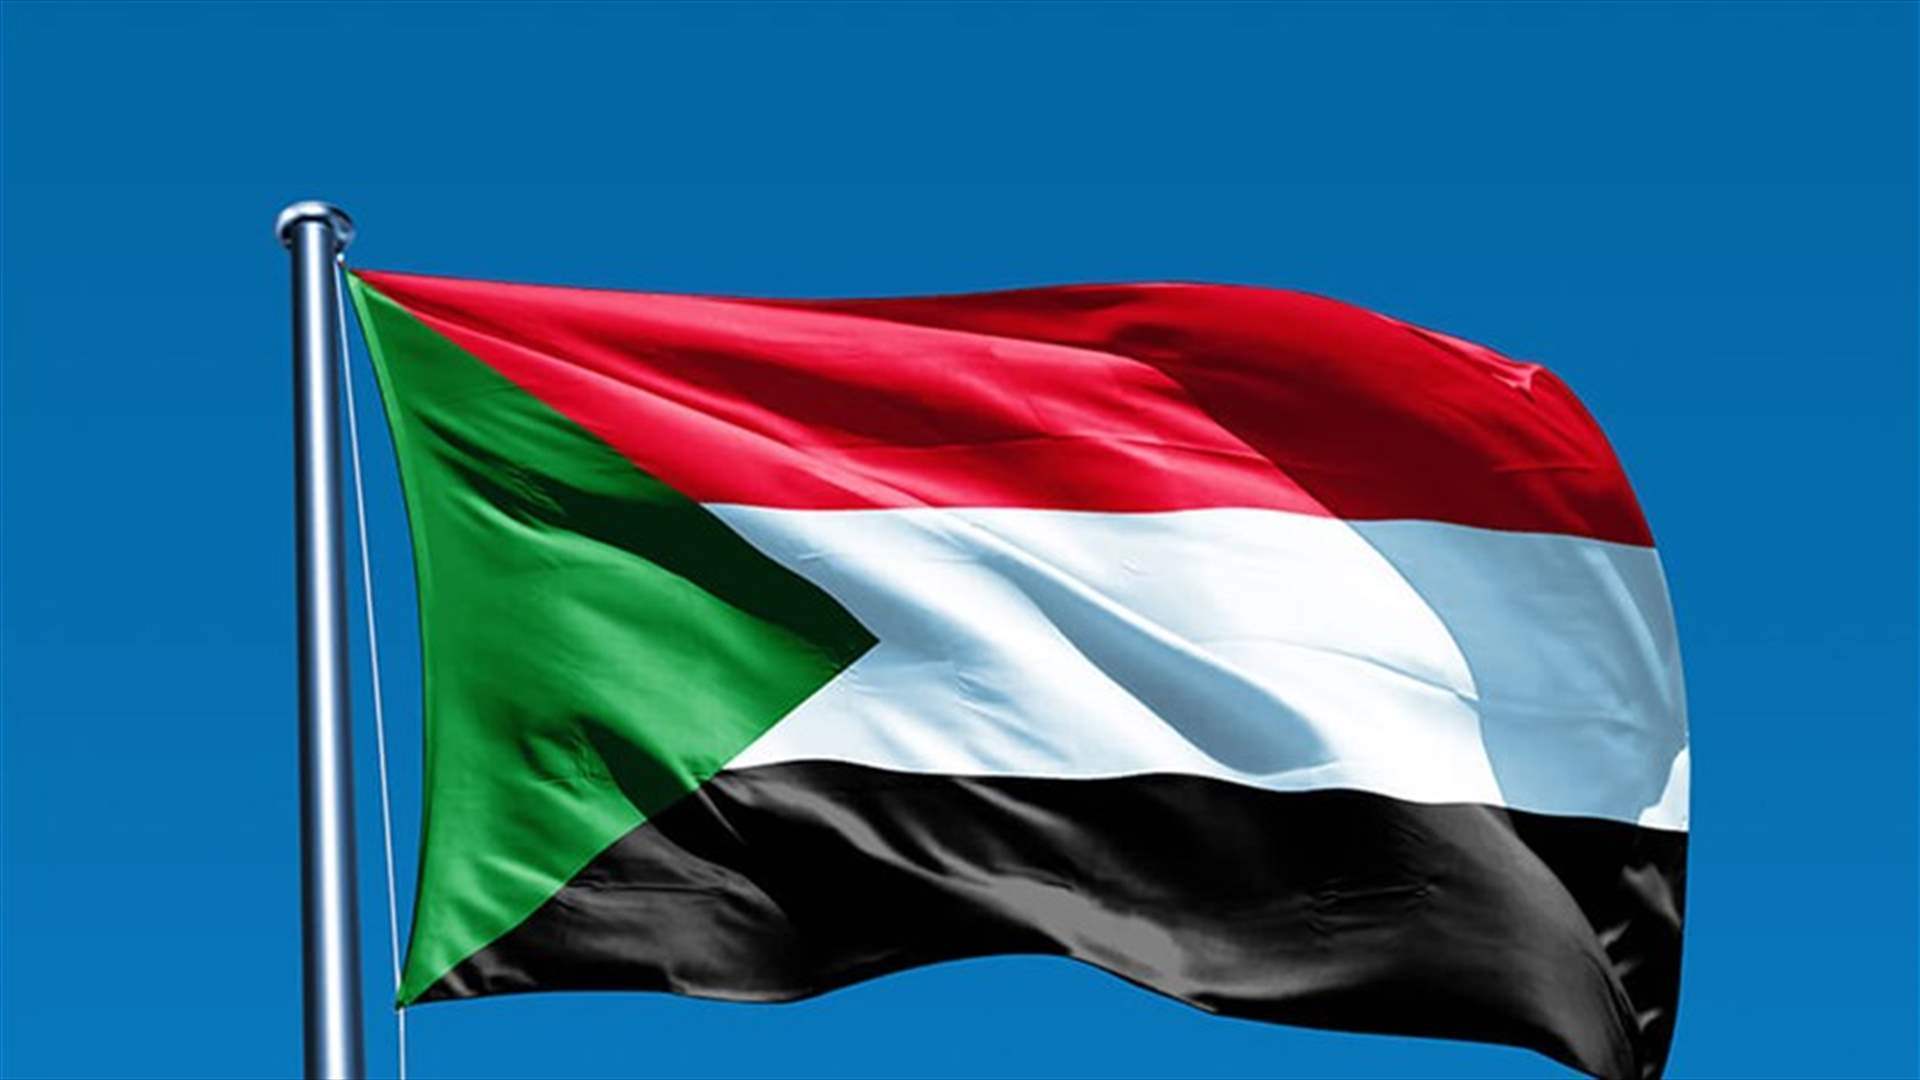 الخارجية السودانية تستنكر استضافة فرنسا مؤتمرا حول الوضع الإنساني بالسودان 